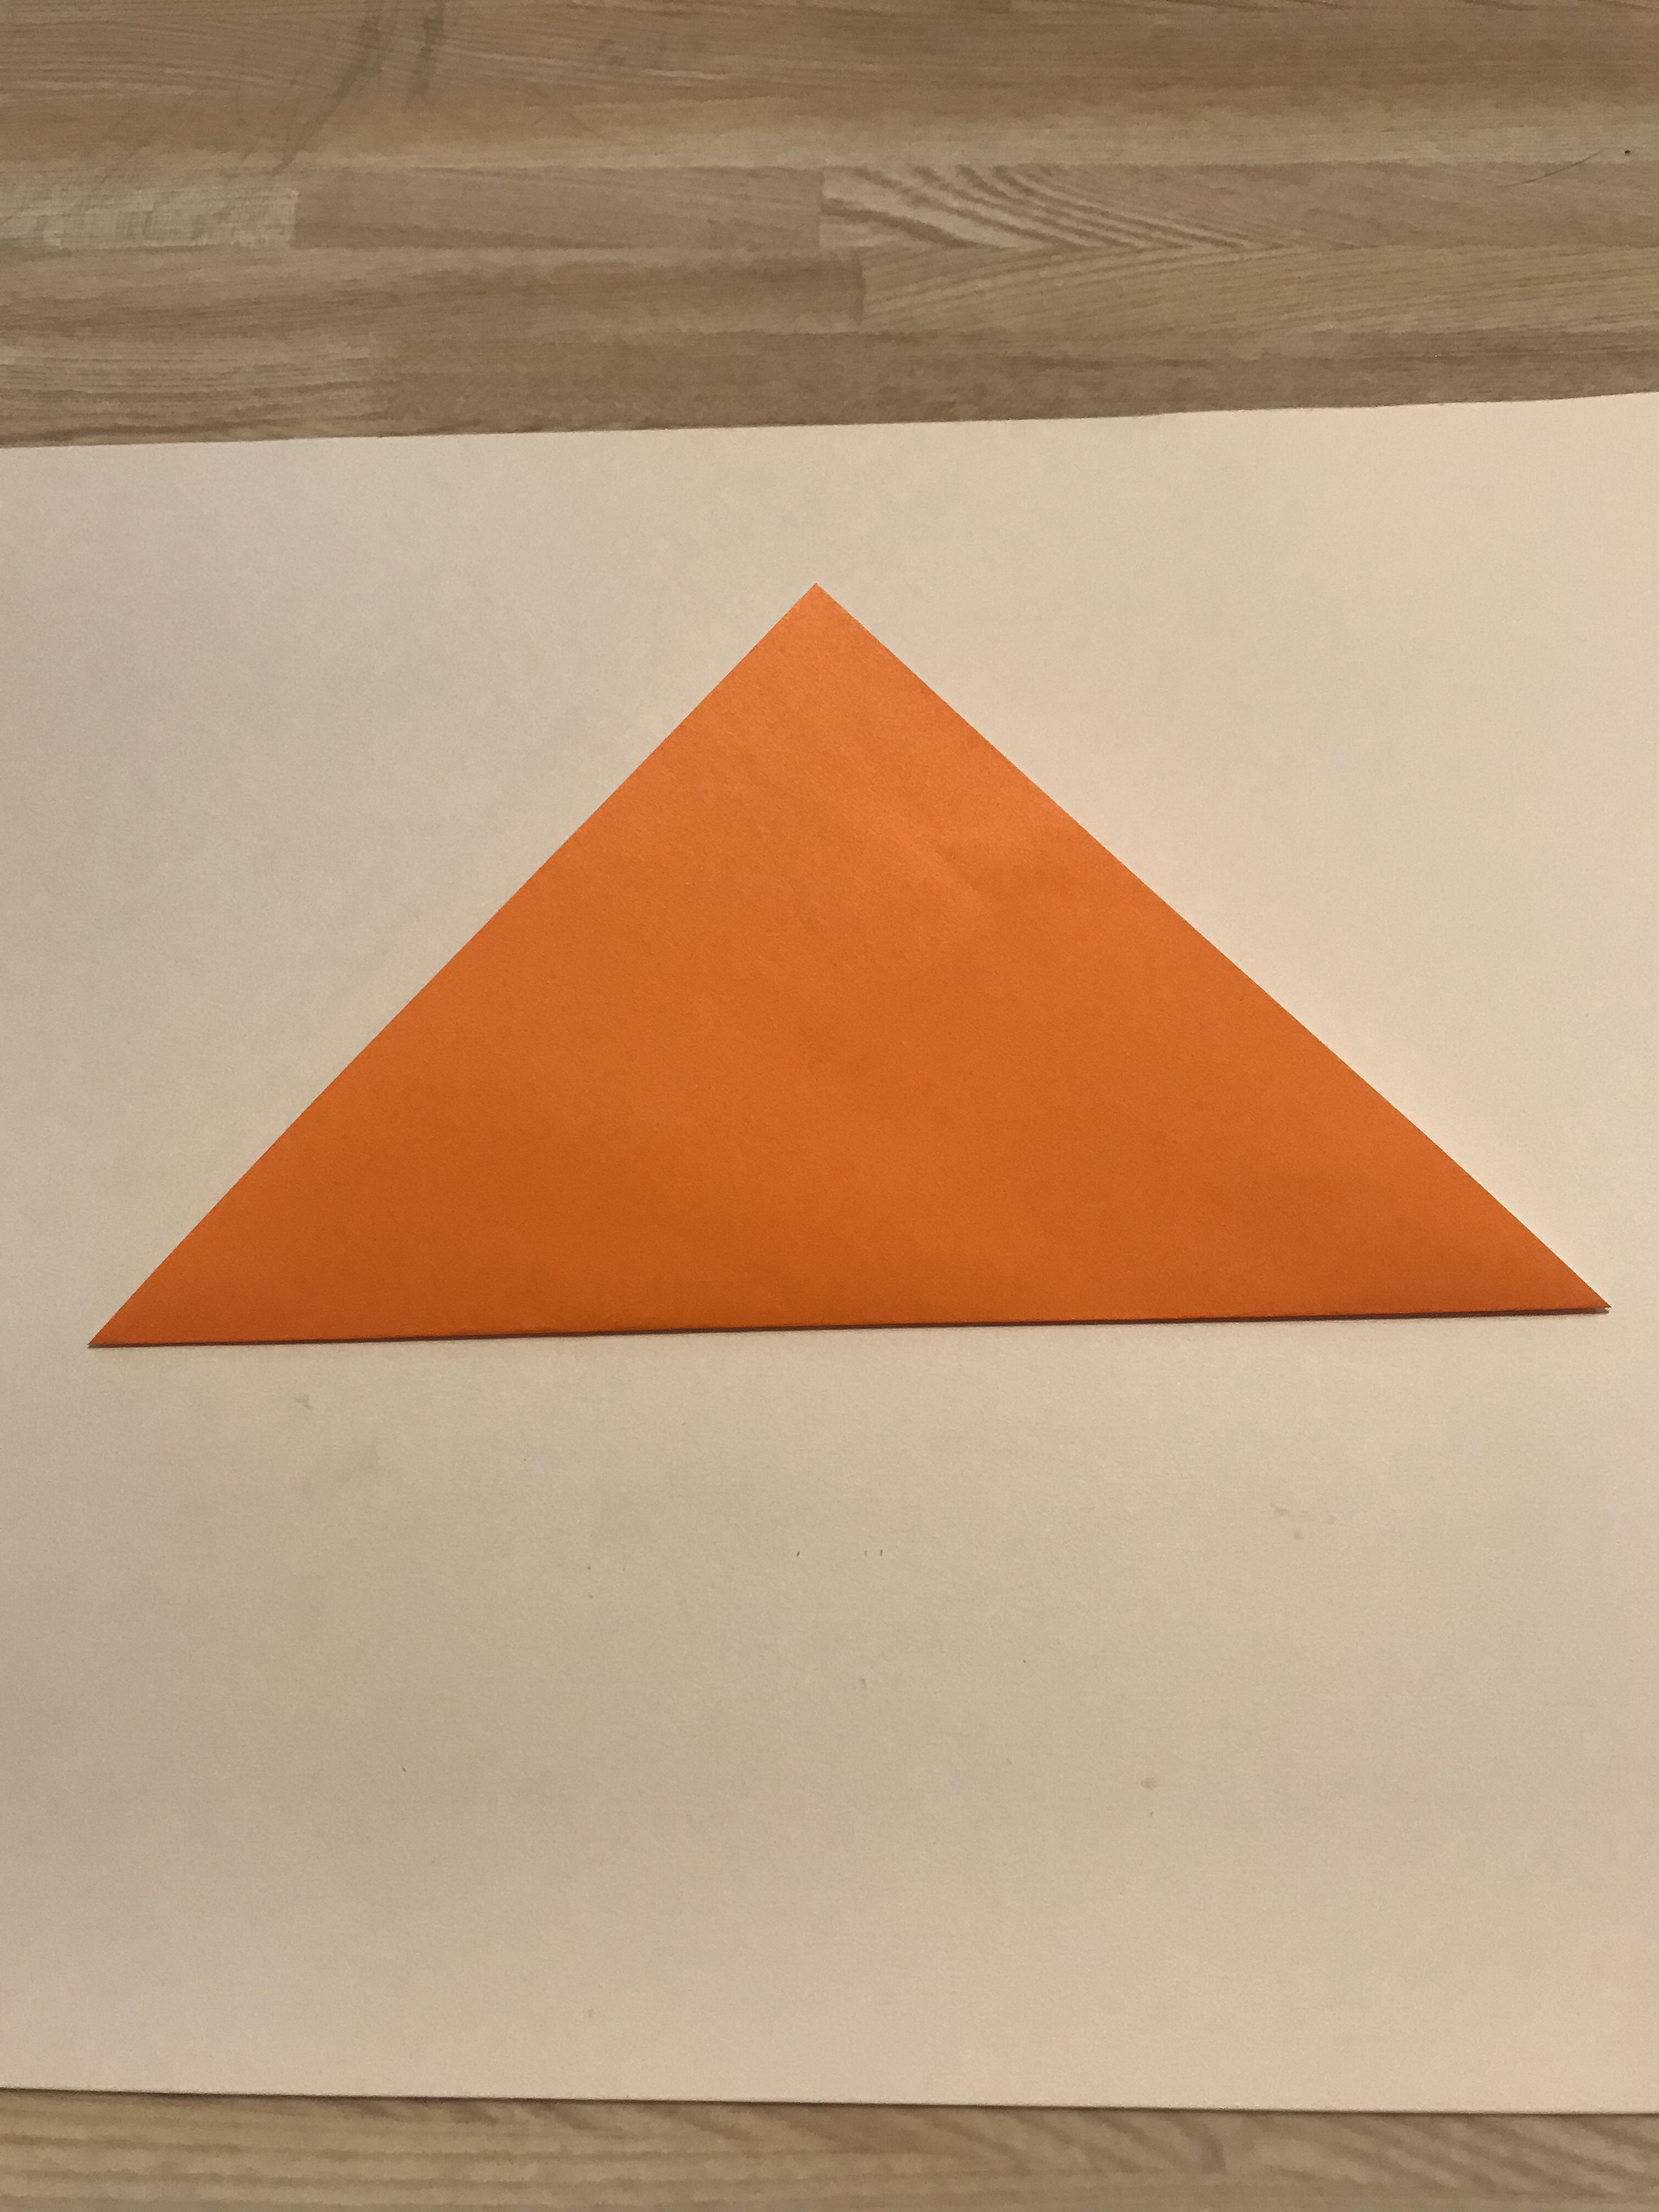 半分に折って三角形になった図